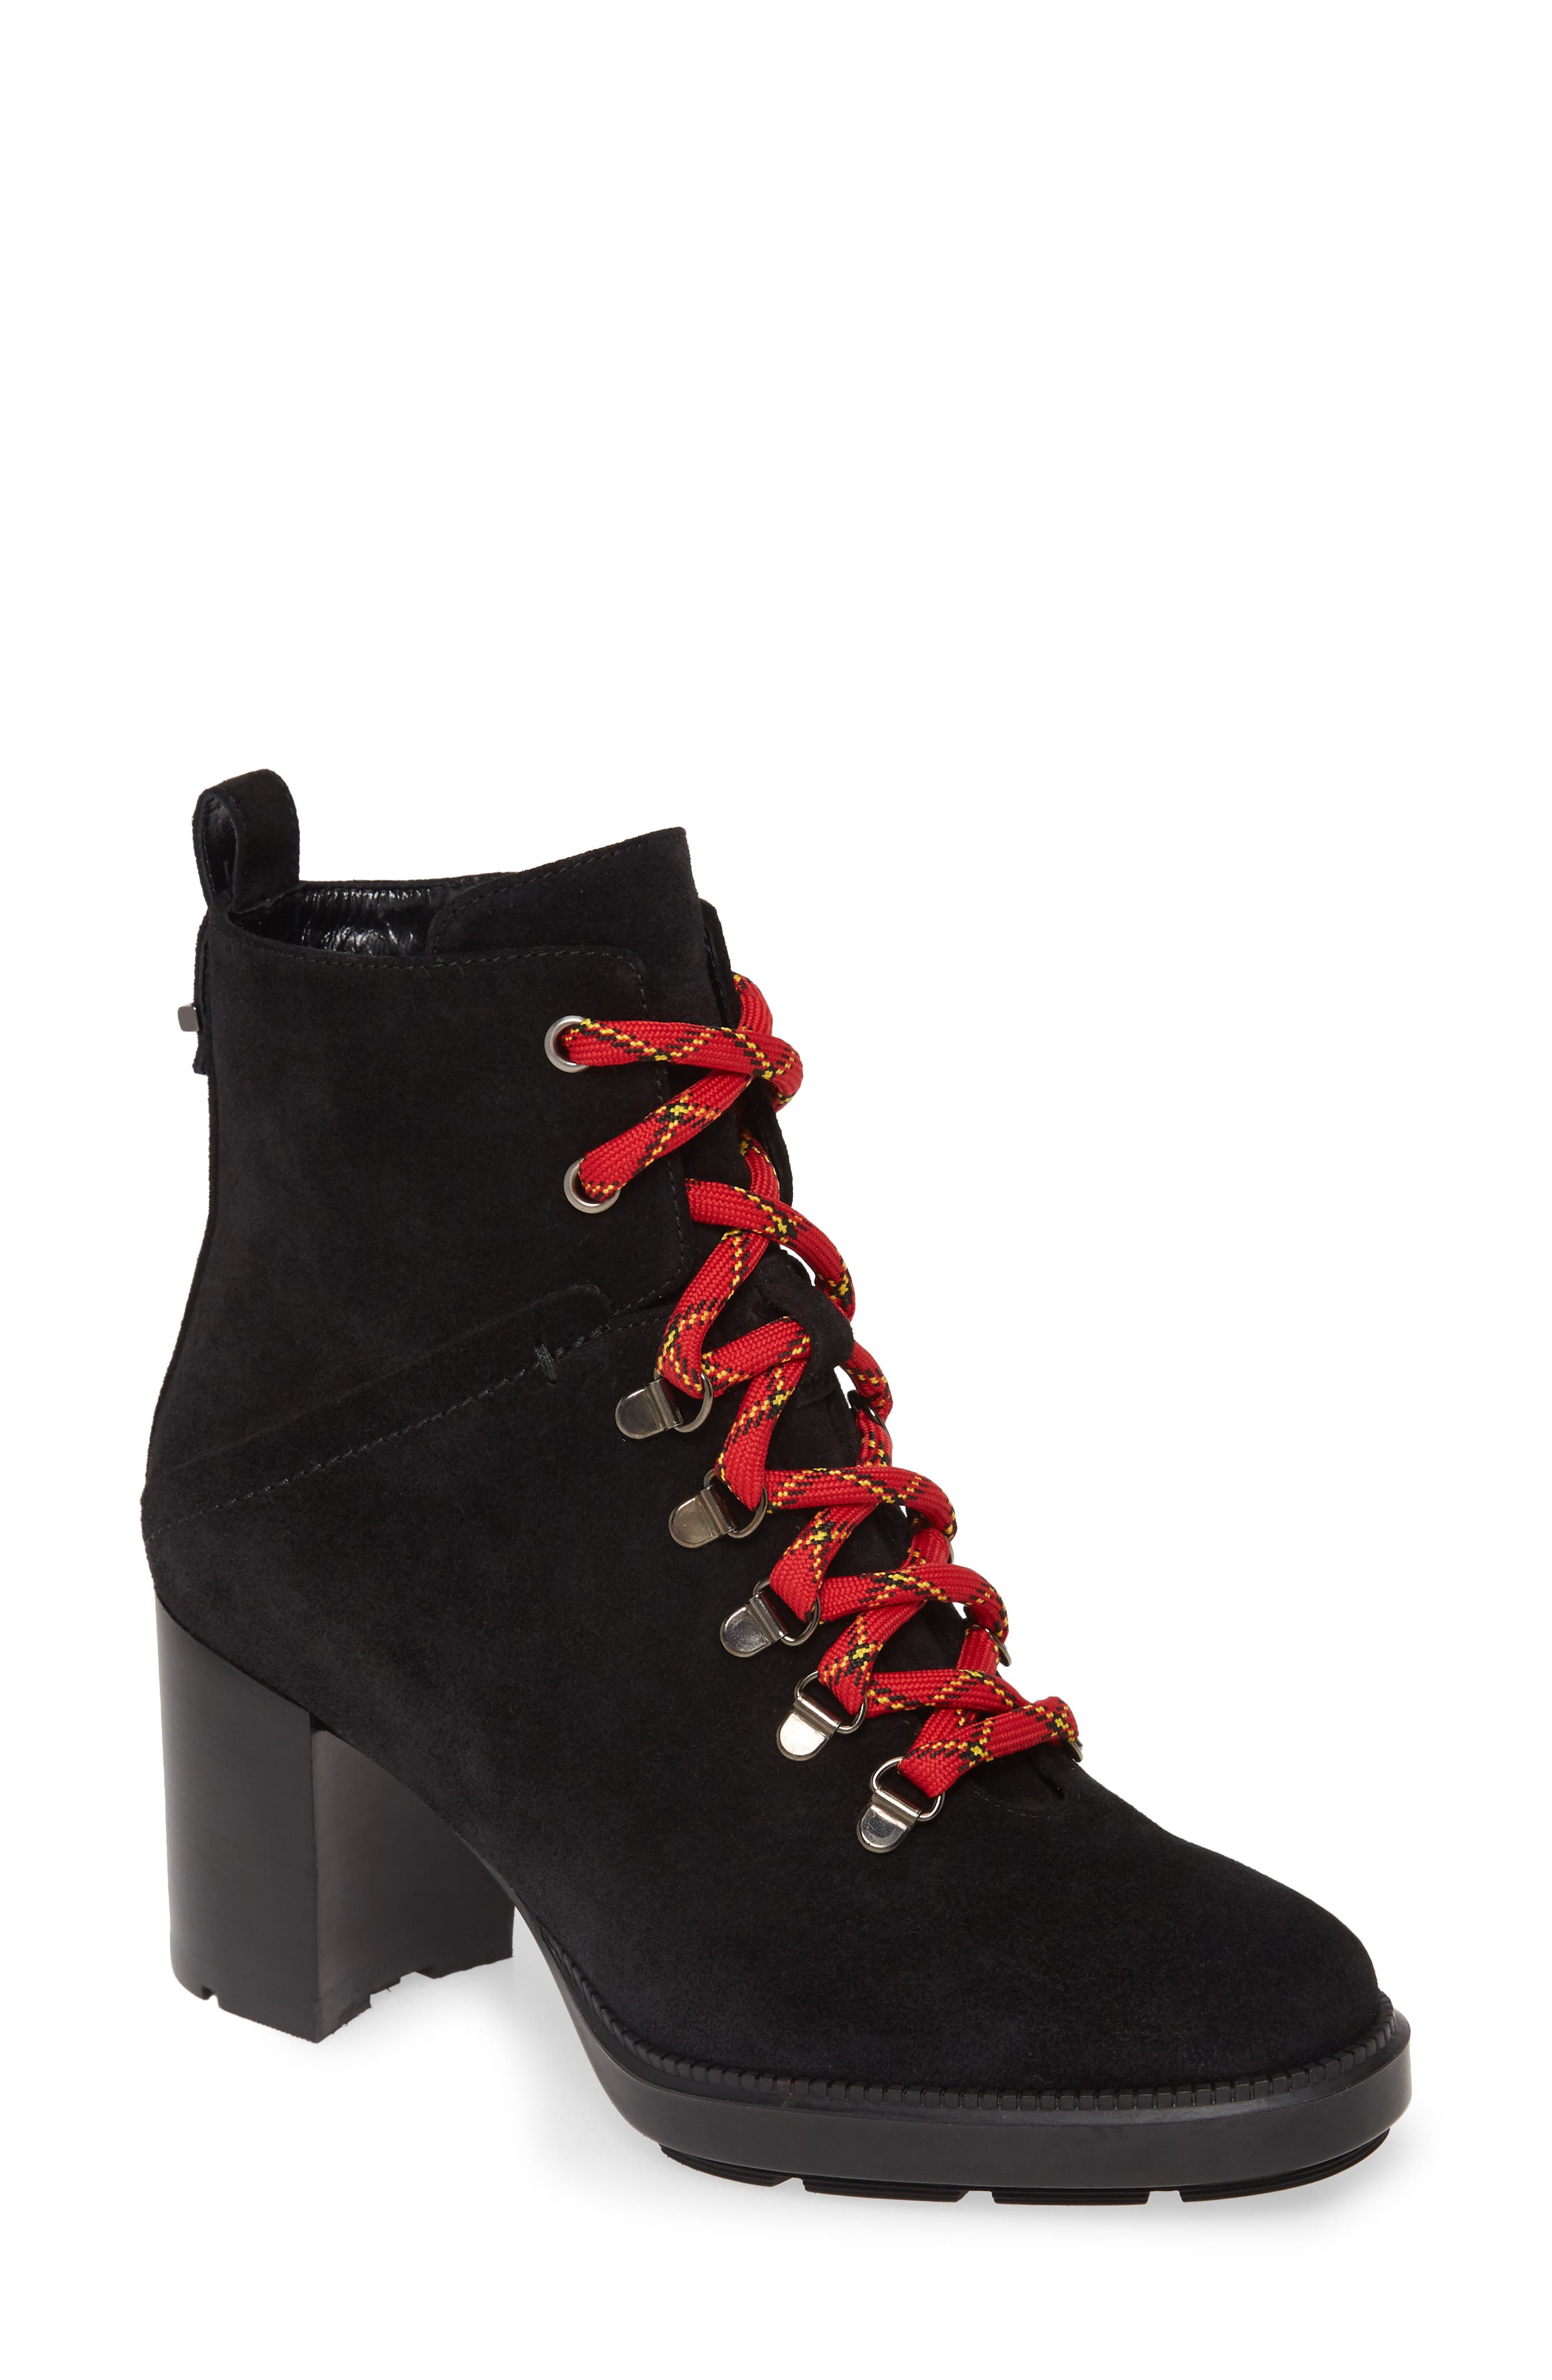 aquatalia lace up boots